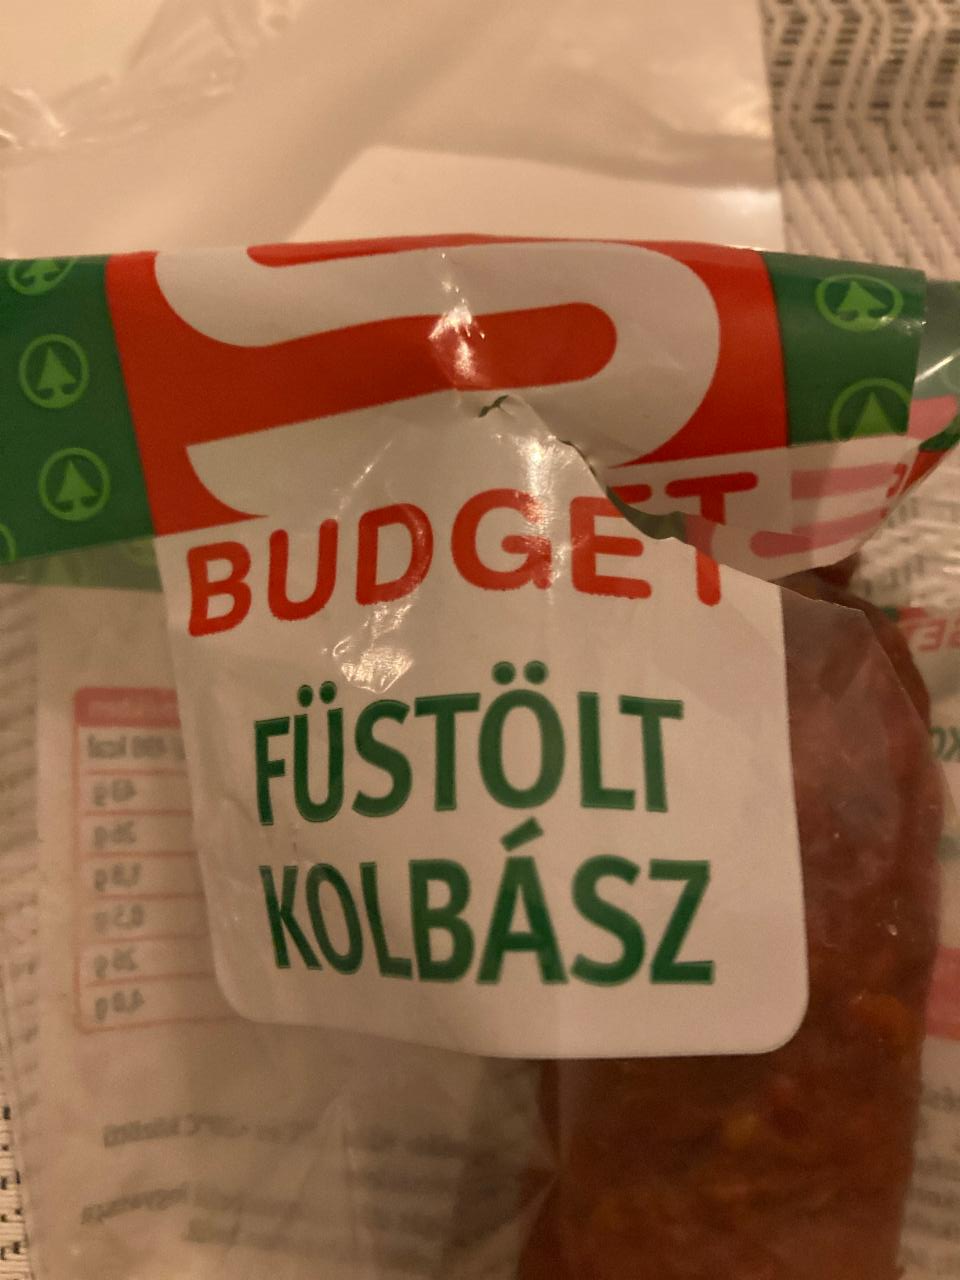 Fotografie - Füstölt kolbász S budget